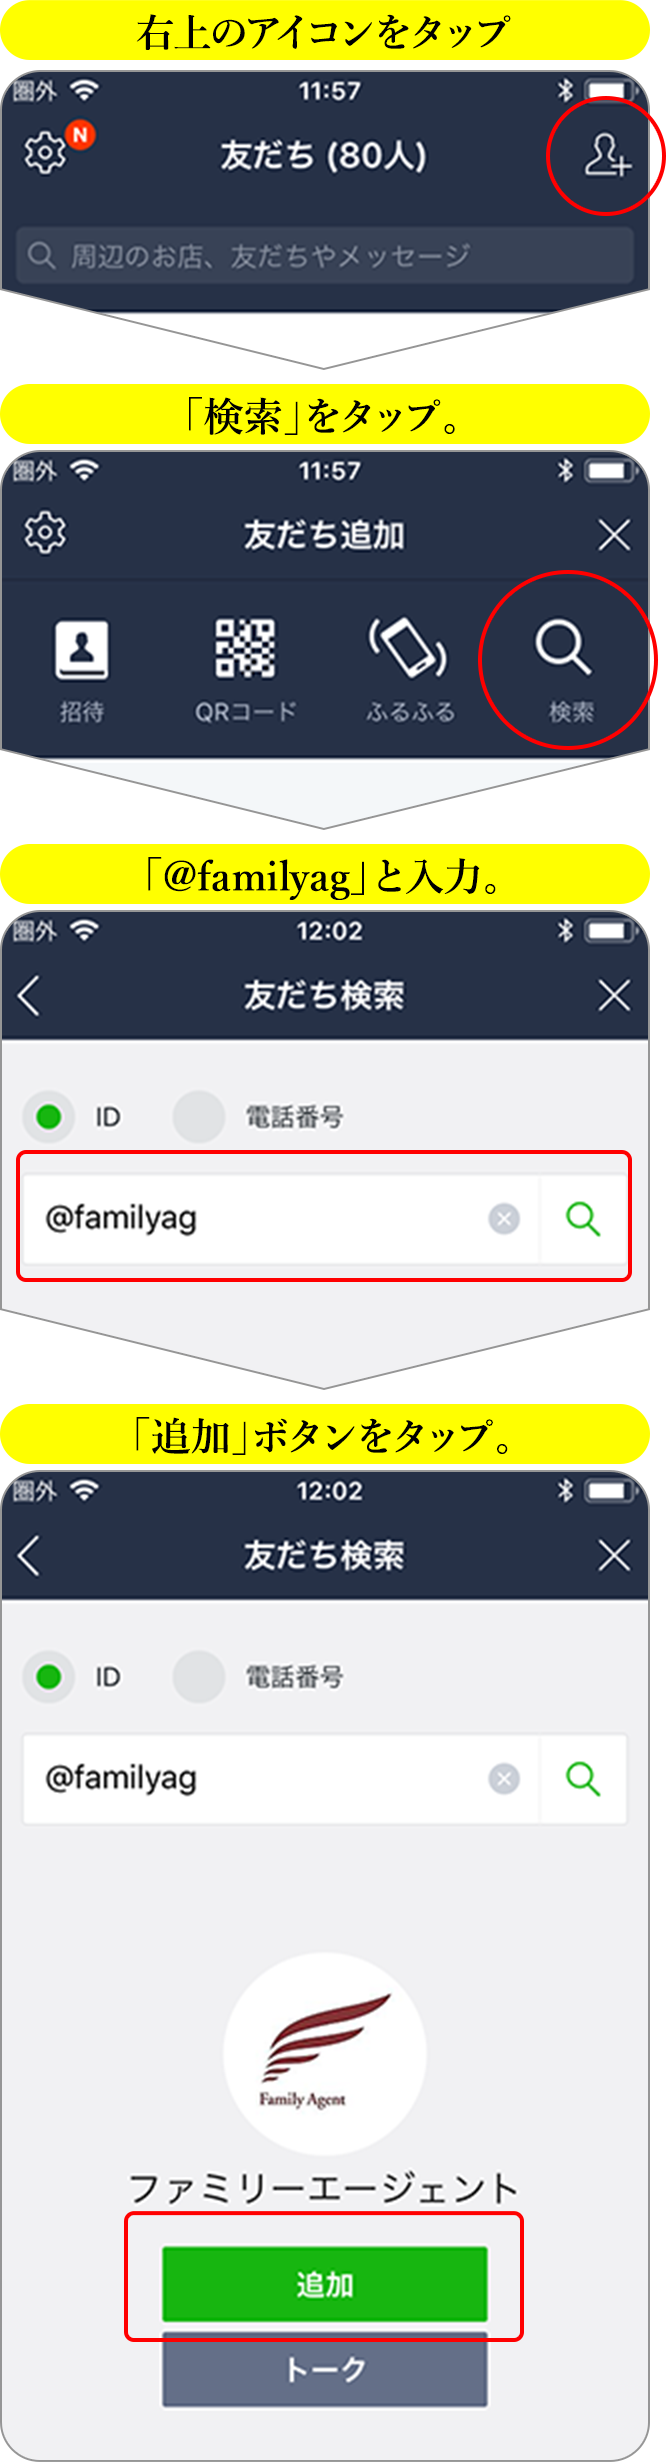 【1】右上のアイコンをタップ【2】「検索」をタップ。【3】「@familyag」と入力。【4】「追加」ボタンをタップ。